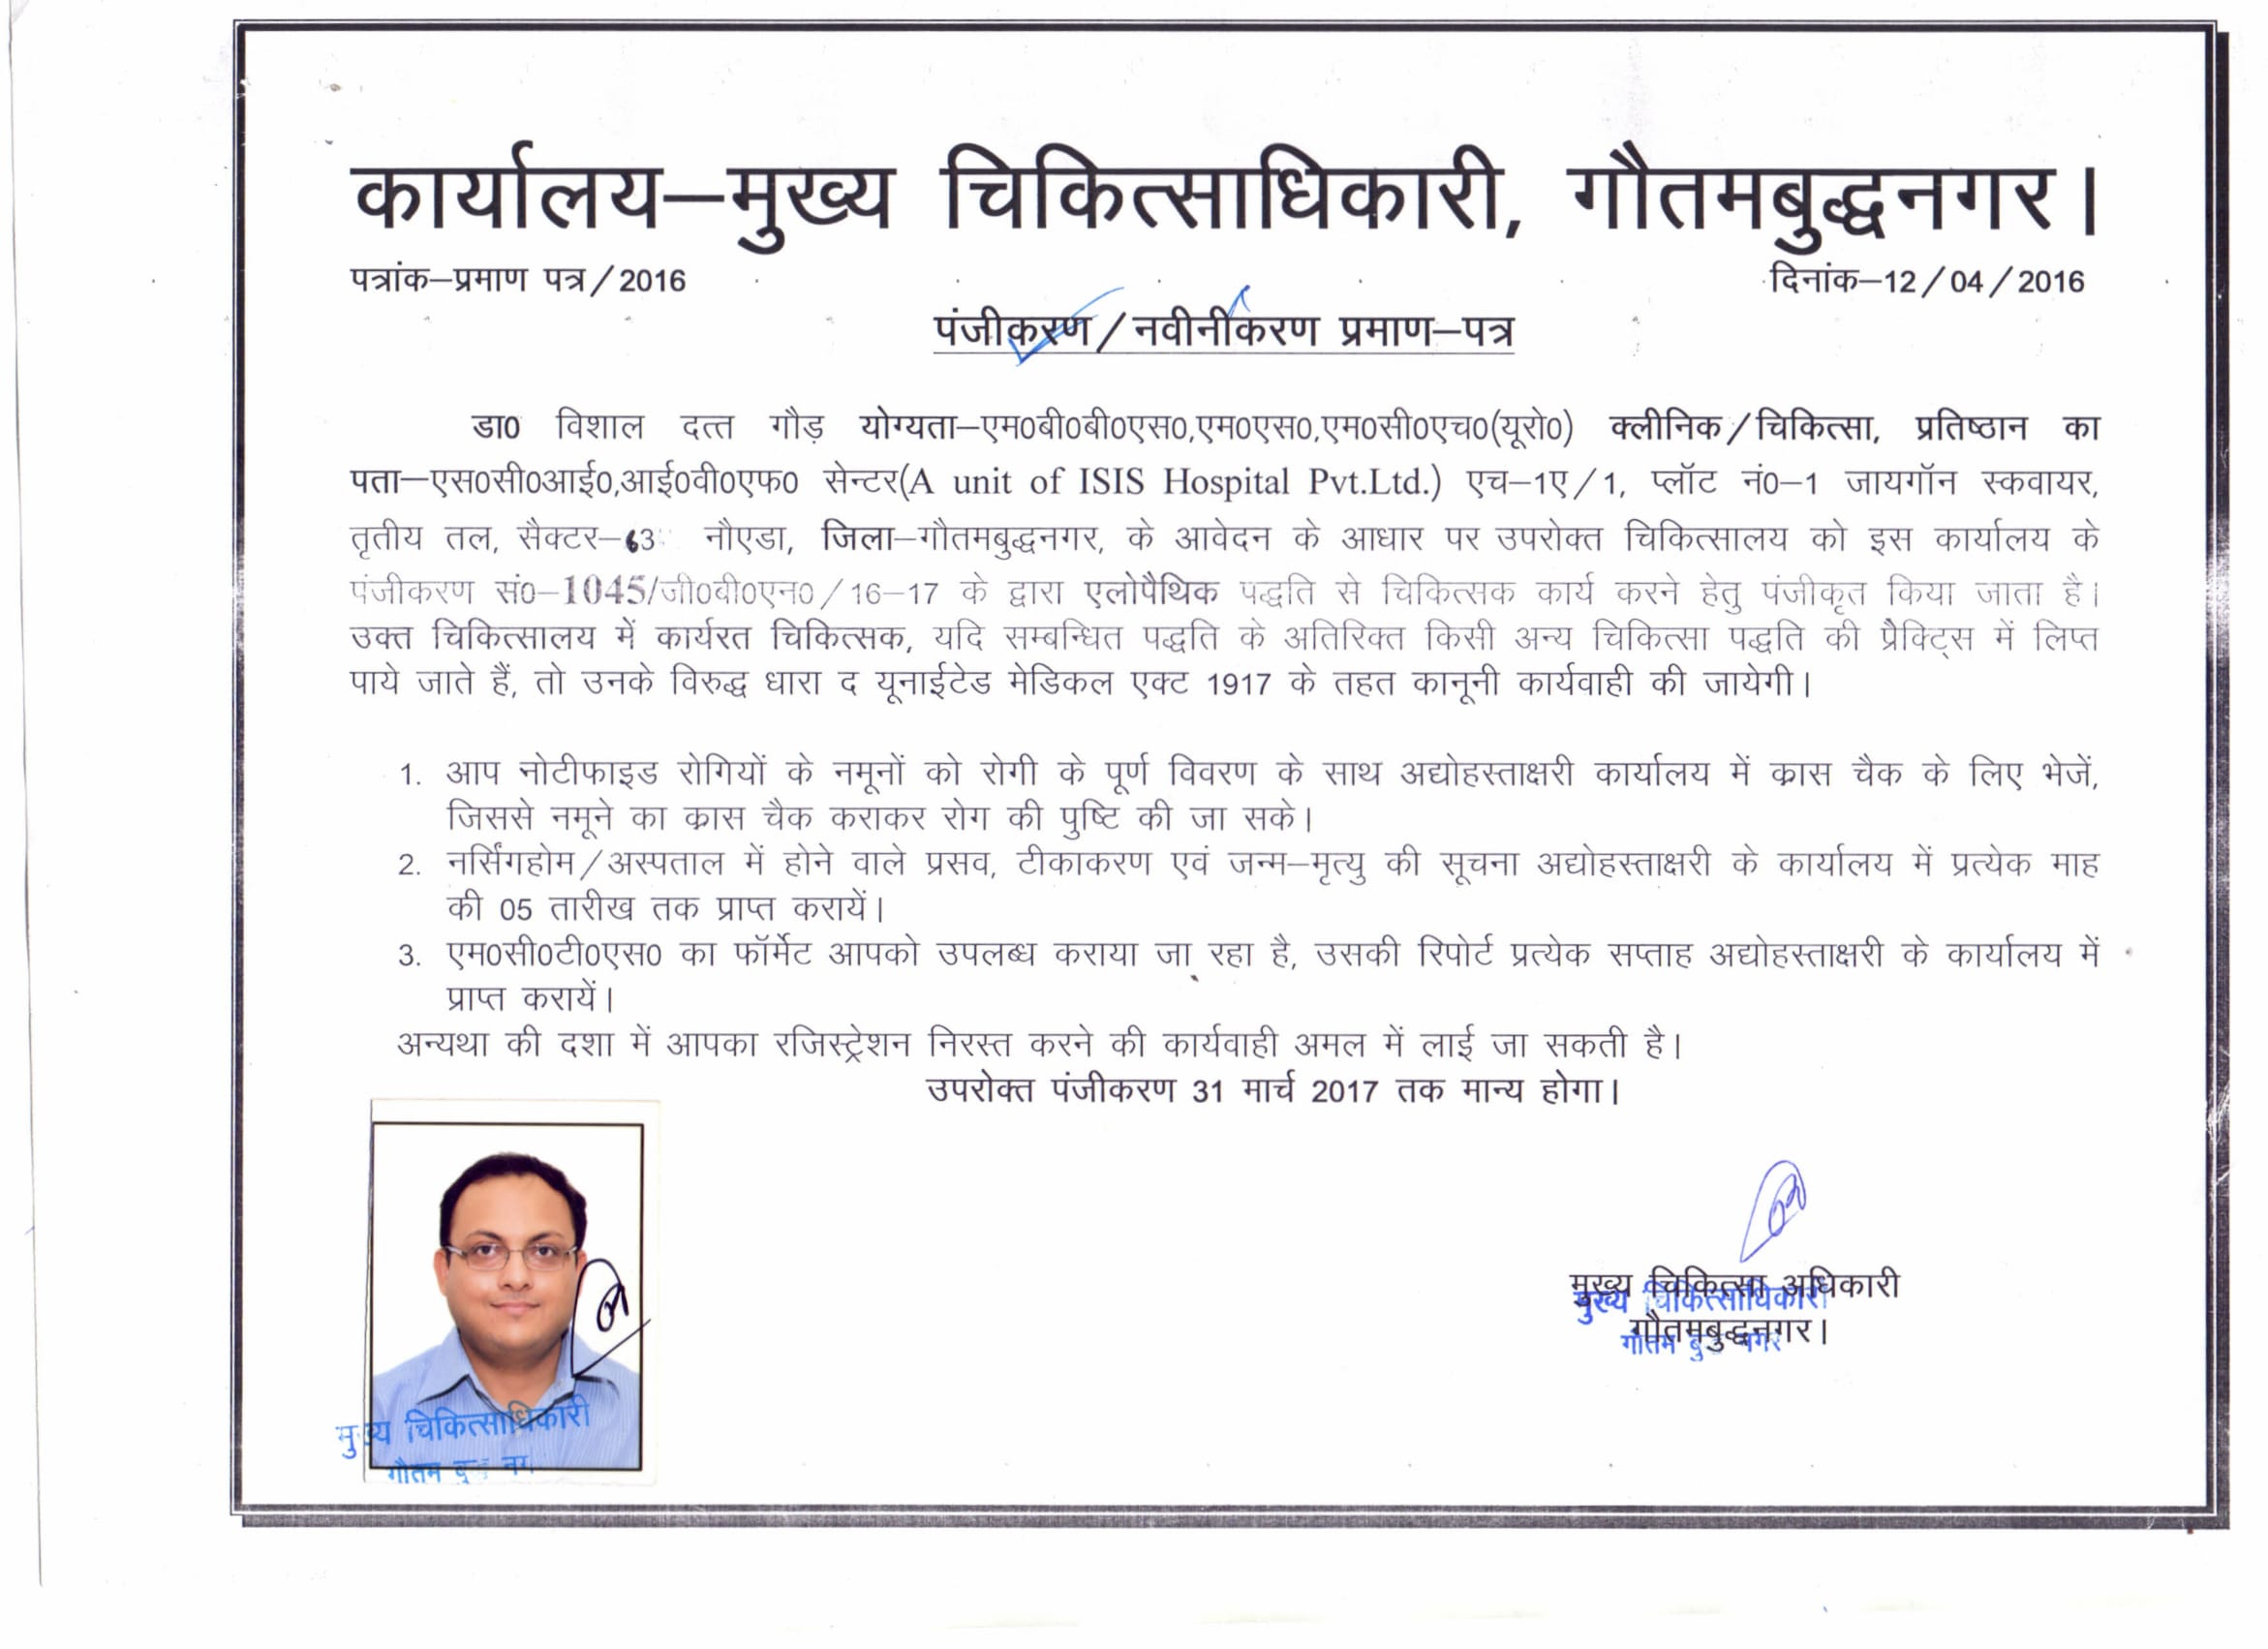 Dr Vishal Dutt Gour Registration Certification